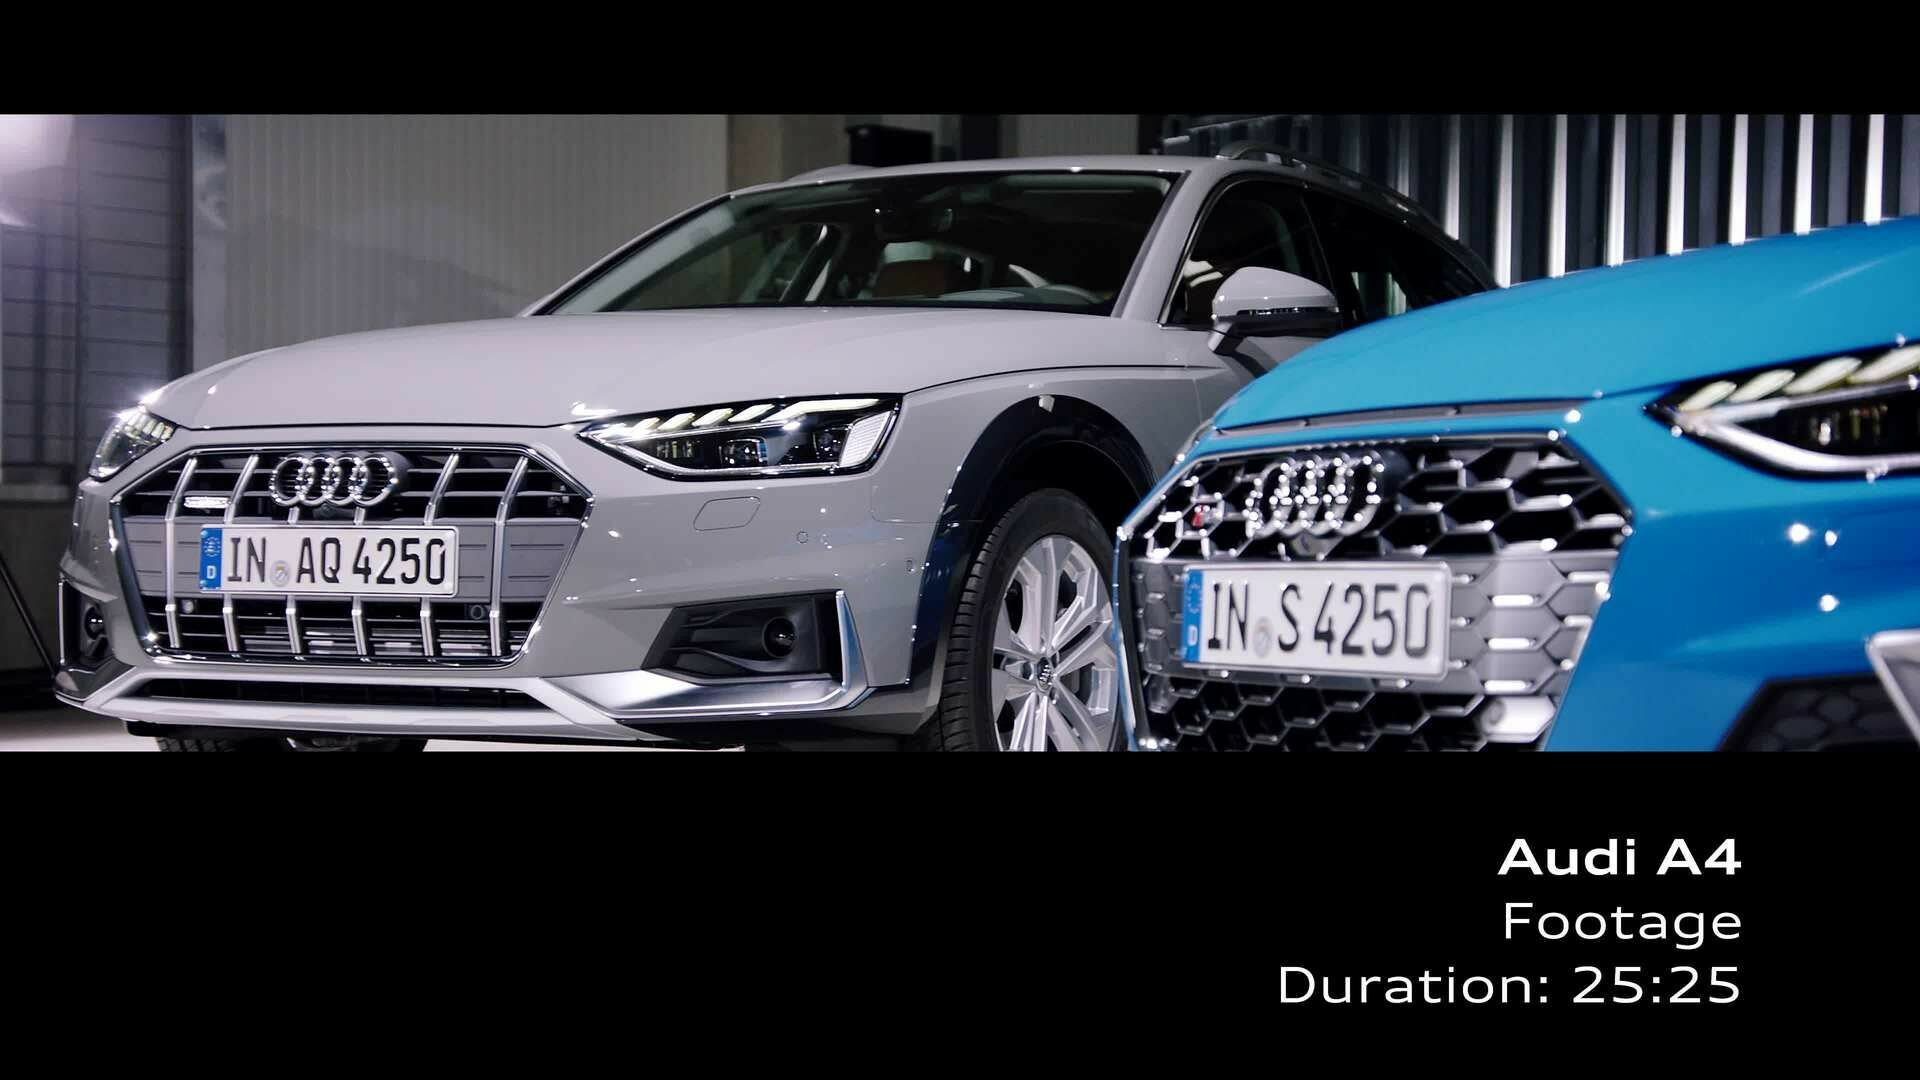 Audi A4 (Footage)